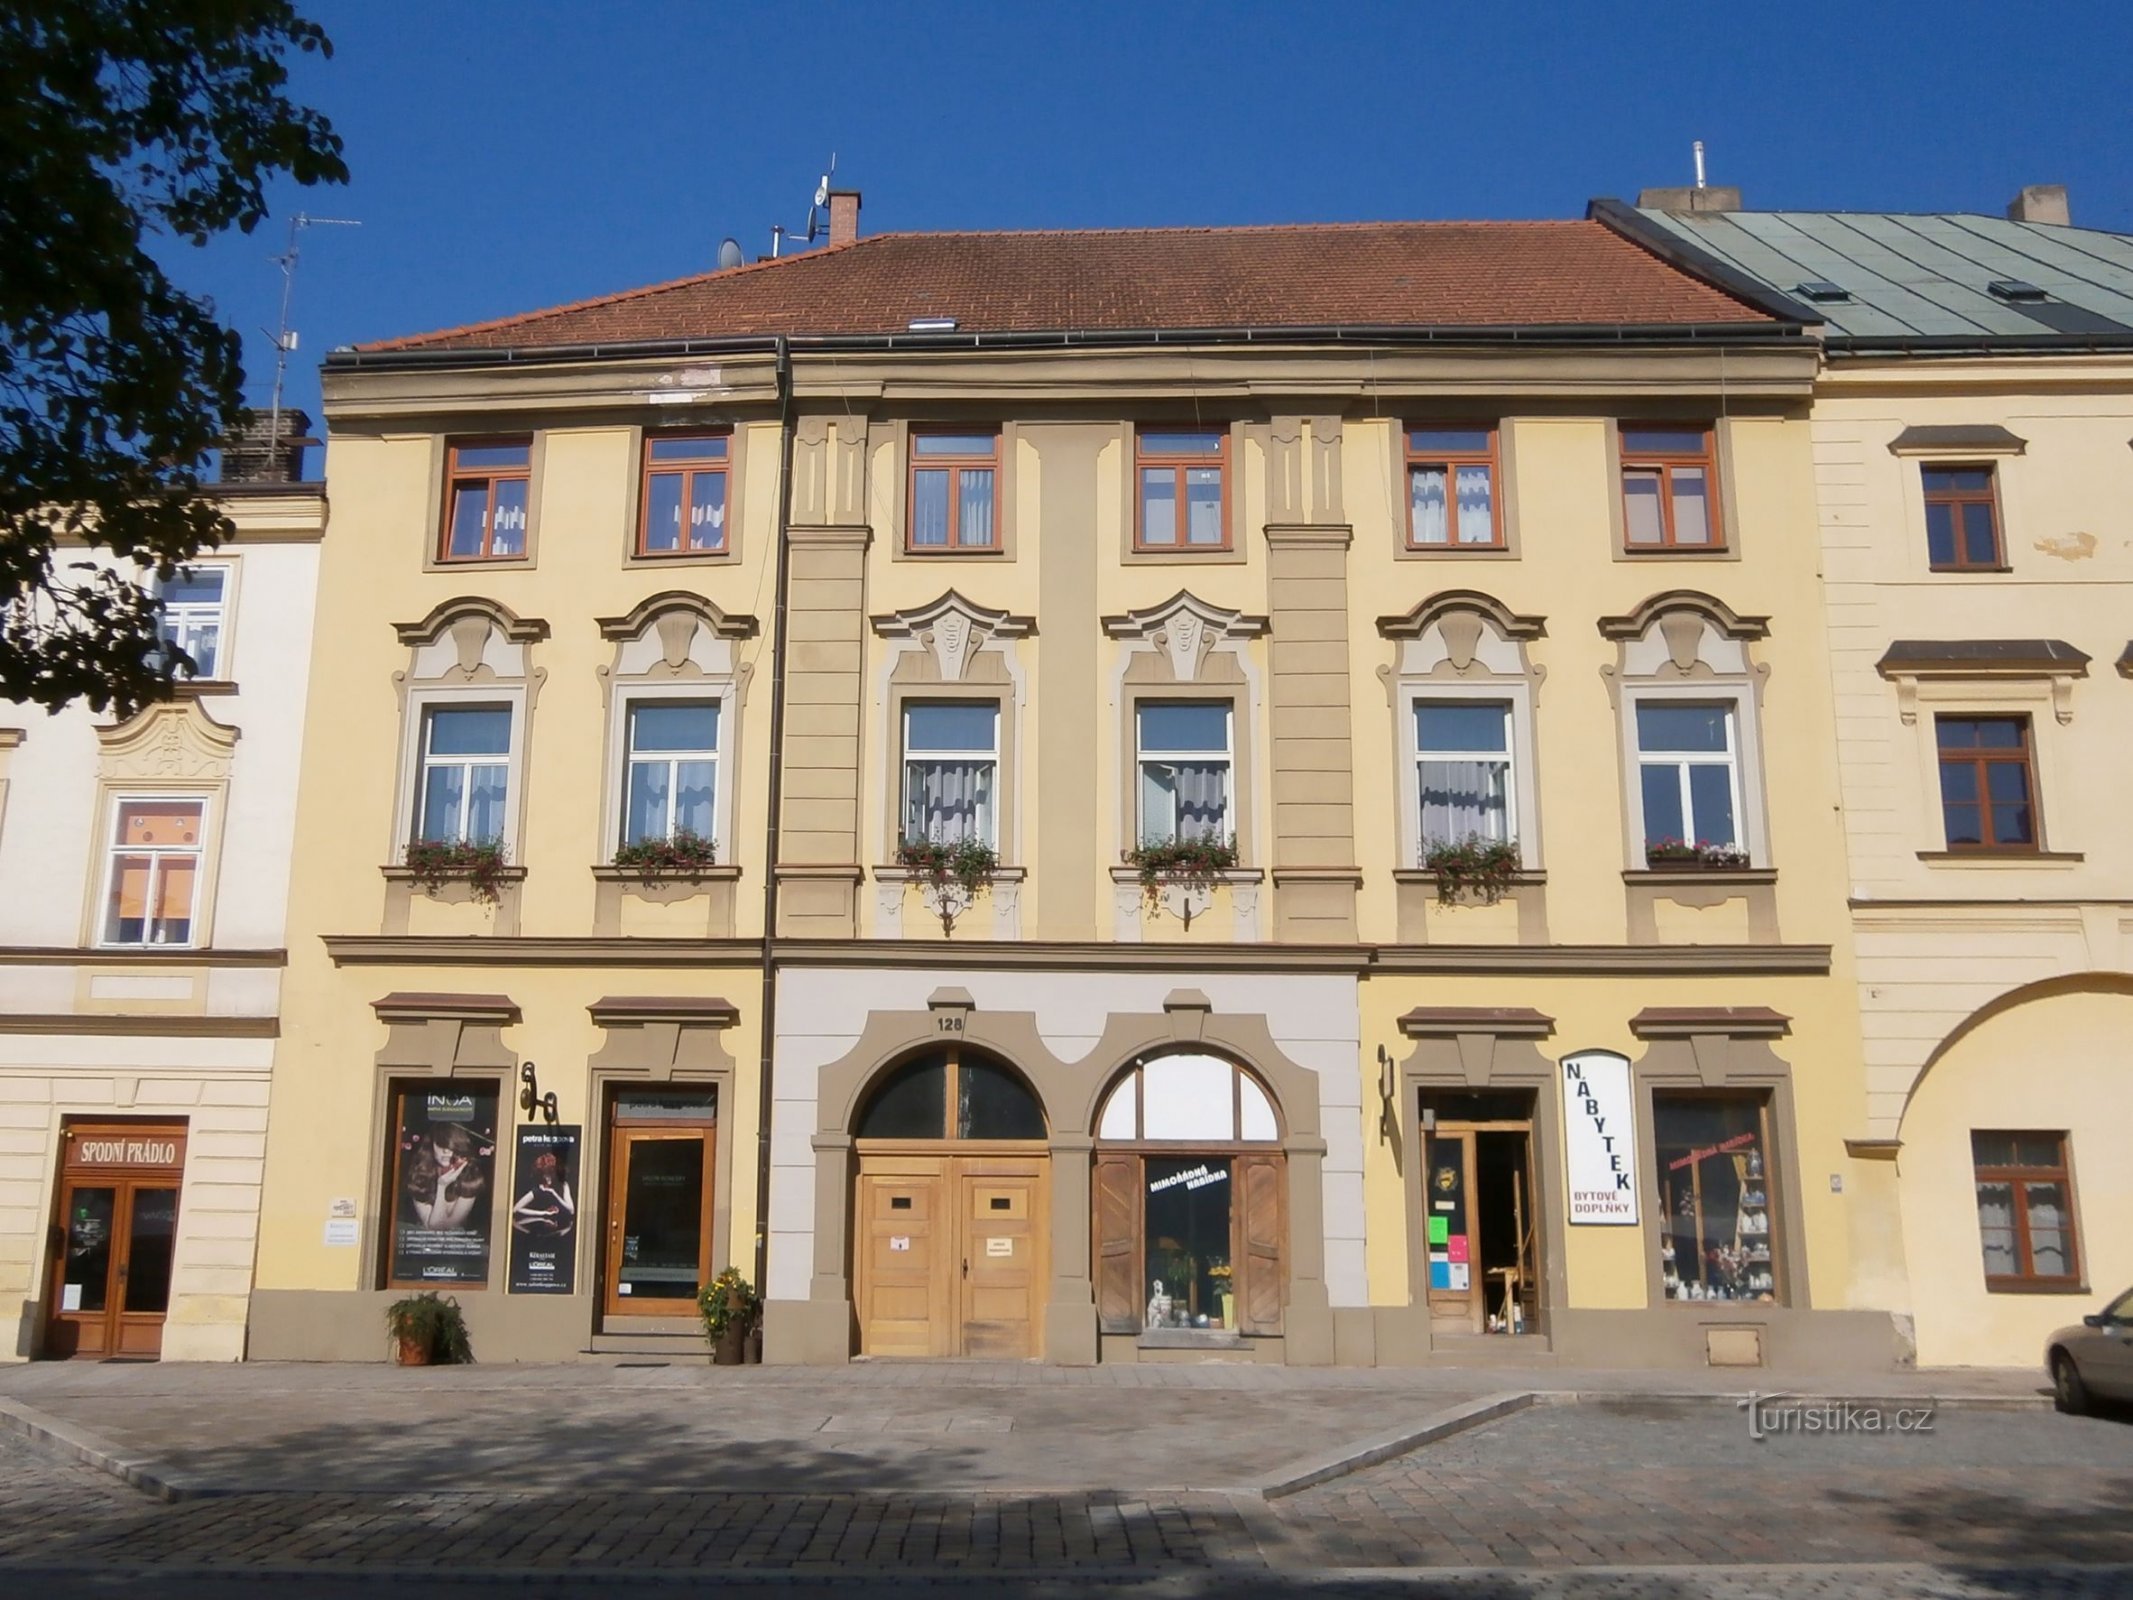 Malé náměstí nr. 128 (Hradec Králové, 9.7.2013. april XNUMX)